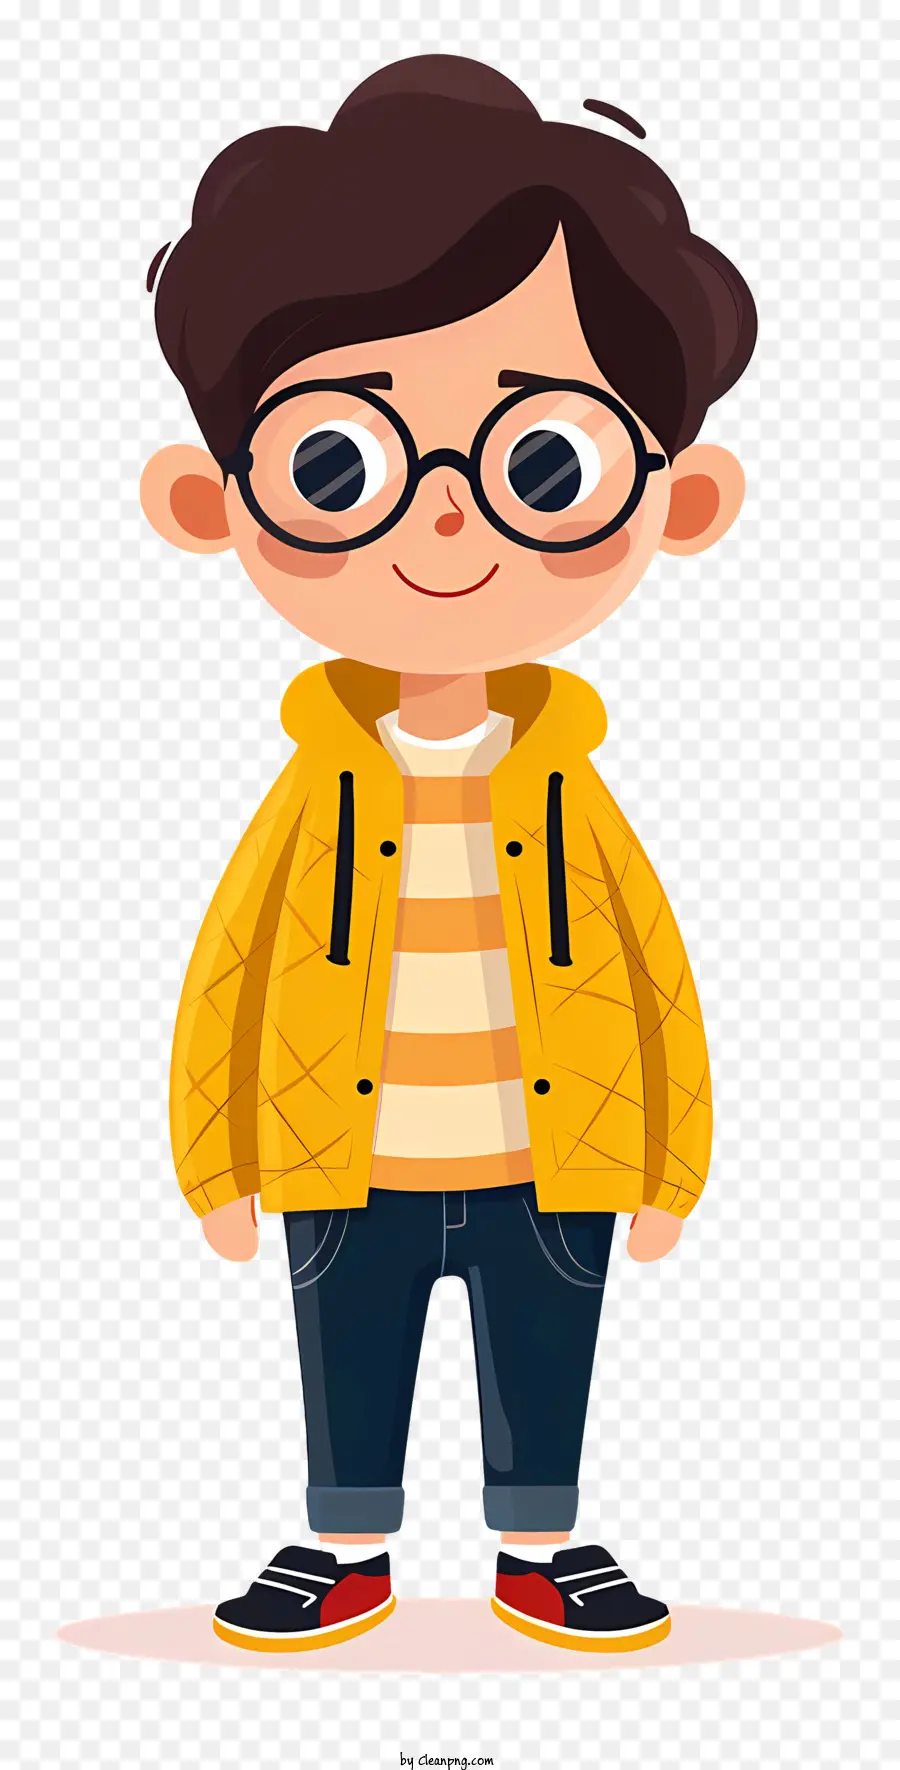 bicchieri - Persona in giacca gialla con occhiali, felice